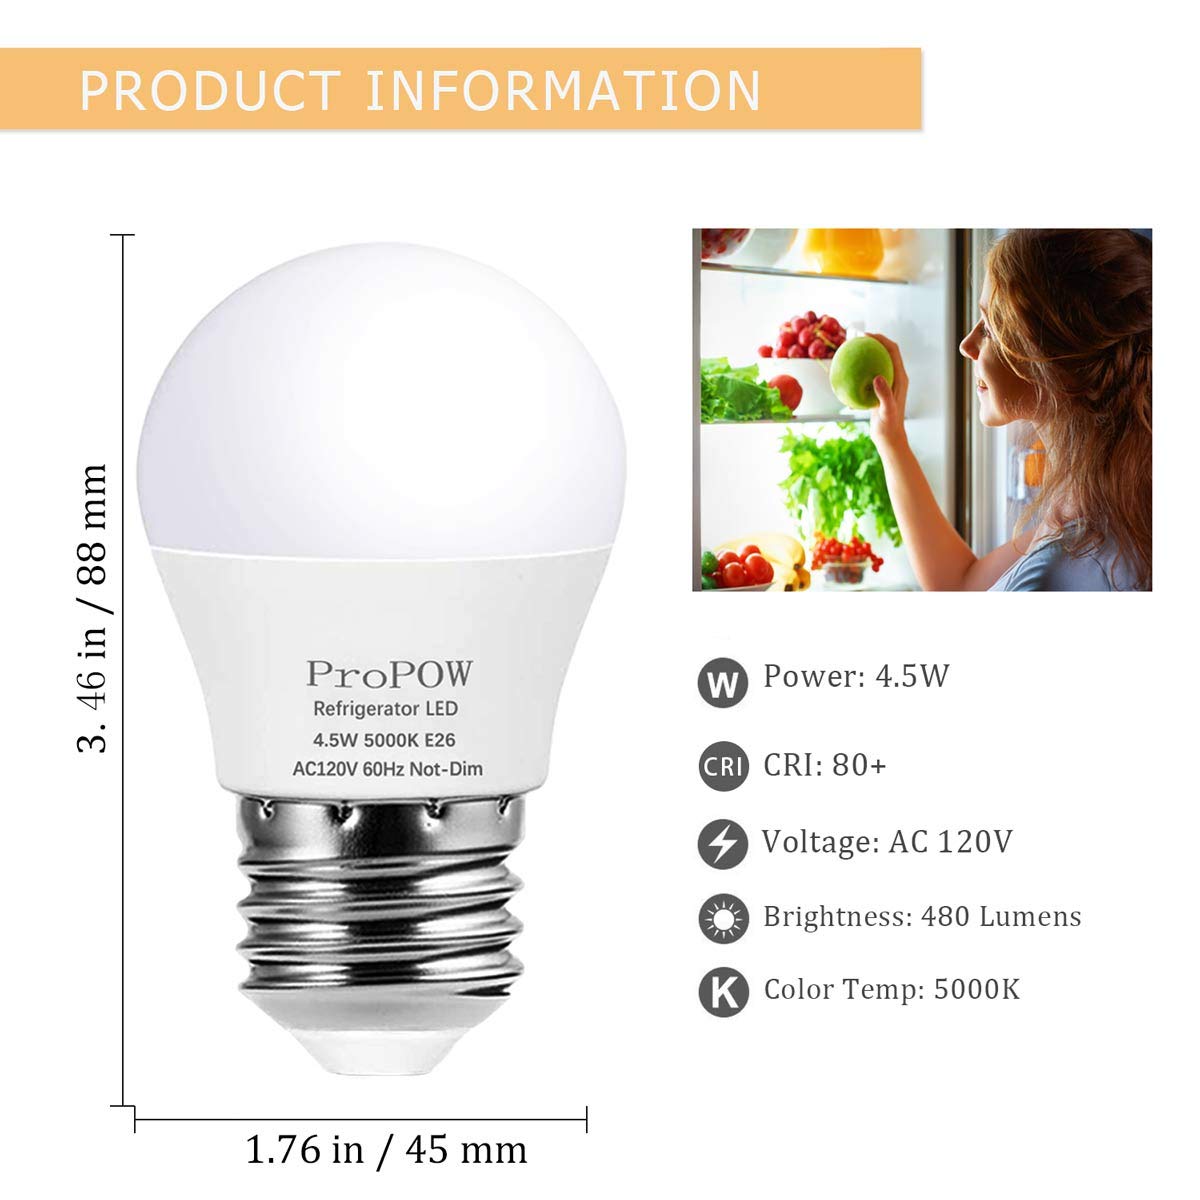 LED Refrigerator Light Bulb 40 Watt Equivalent 120V 4.5W Fridge Bulbs Daylight White 5000K E26 Medium Base, Energy Saving A15 Freezer Light Bulb, Not-dimmable, Waterproof, 2 Pack